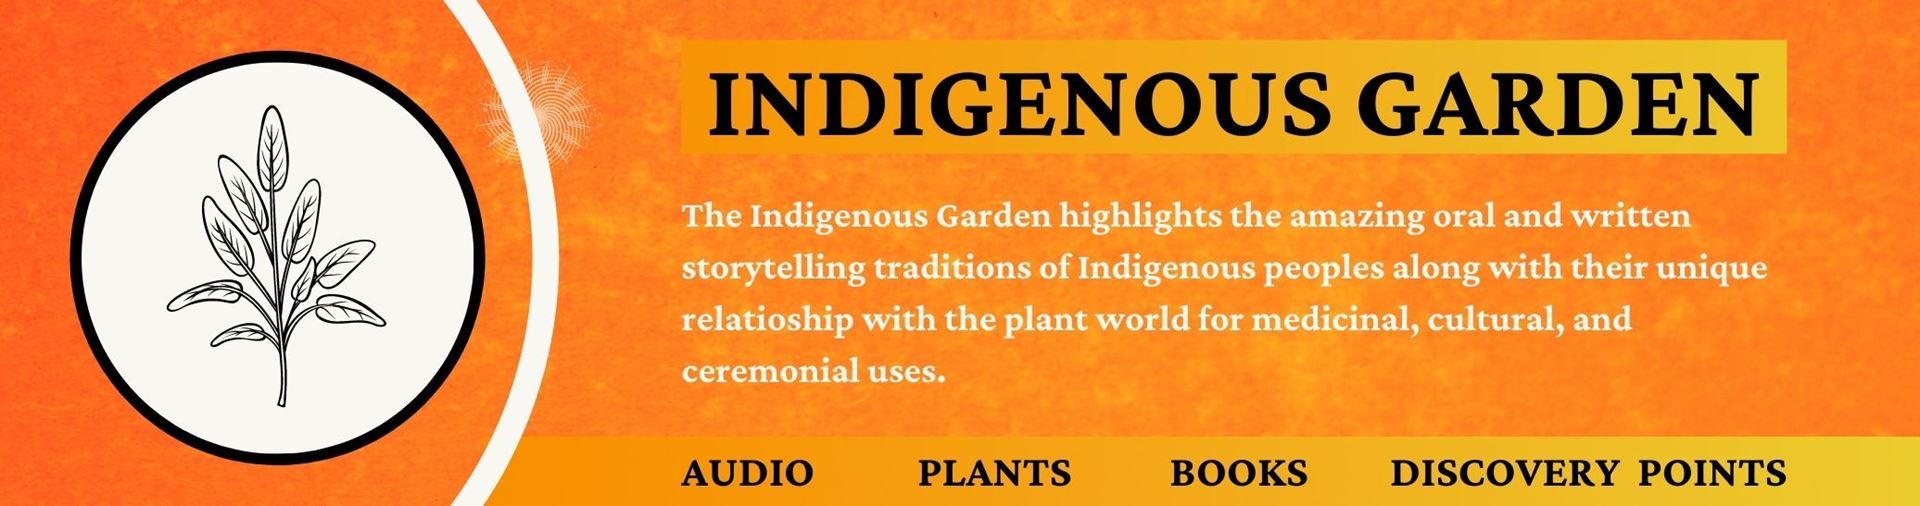 Indigenous Garden